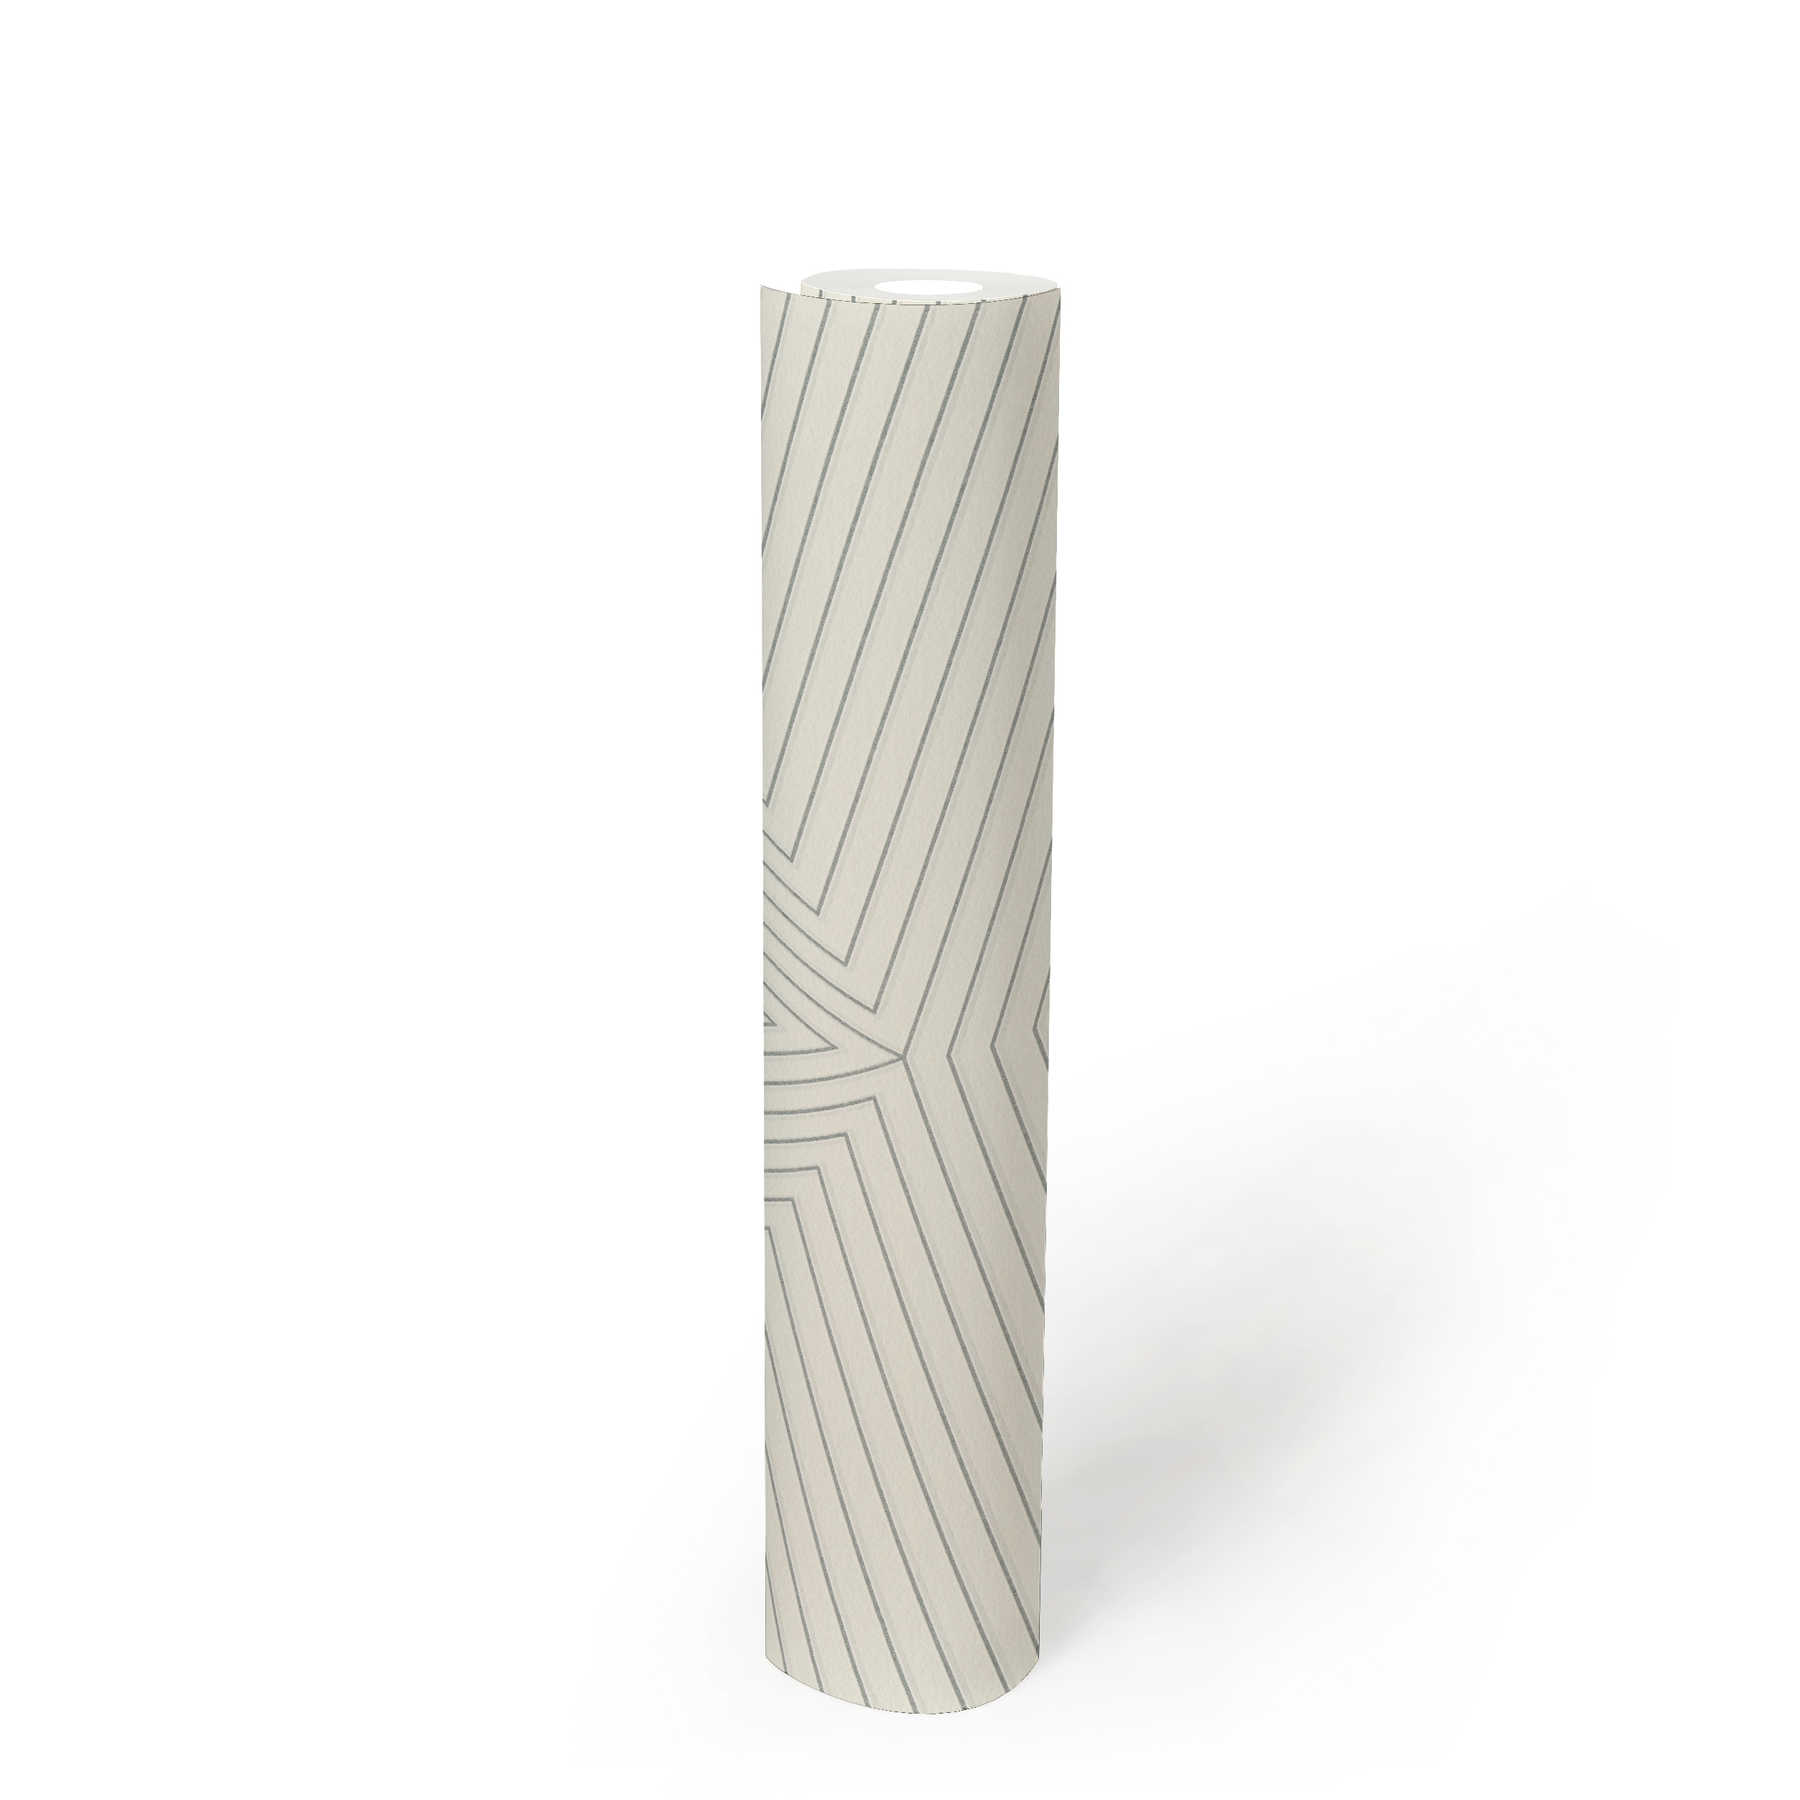             Mustertapete mit Linien Design & Metallic-Effekt – Weiß, Silber
        